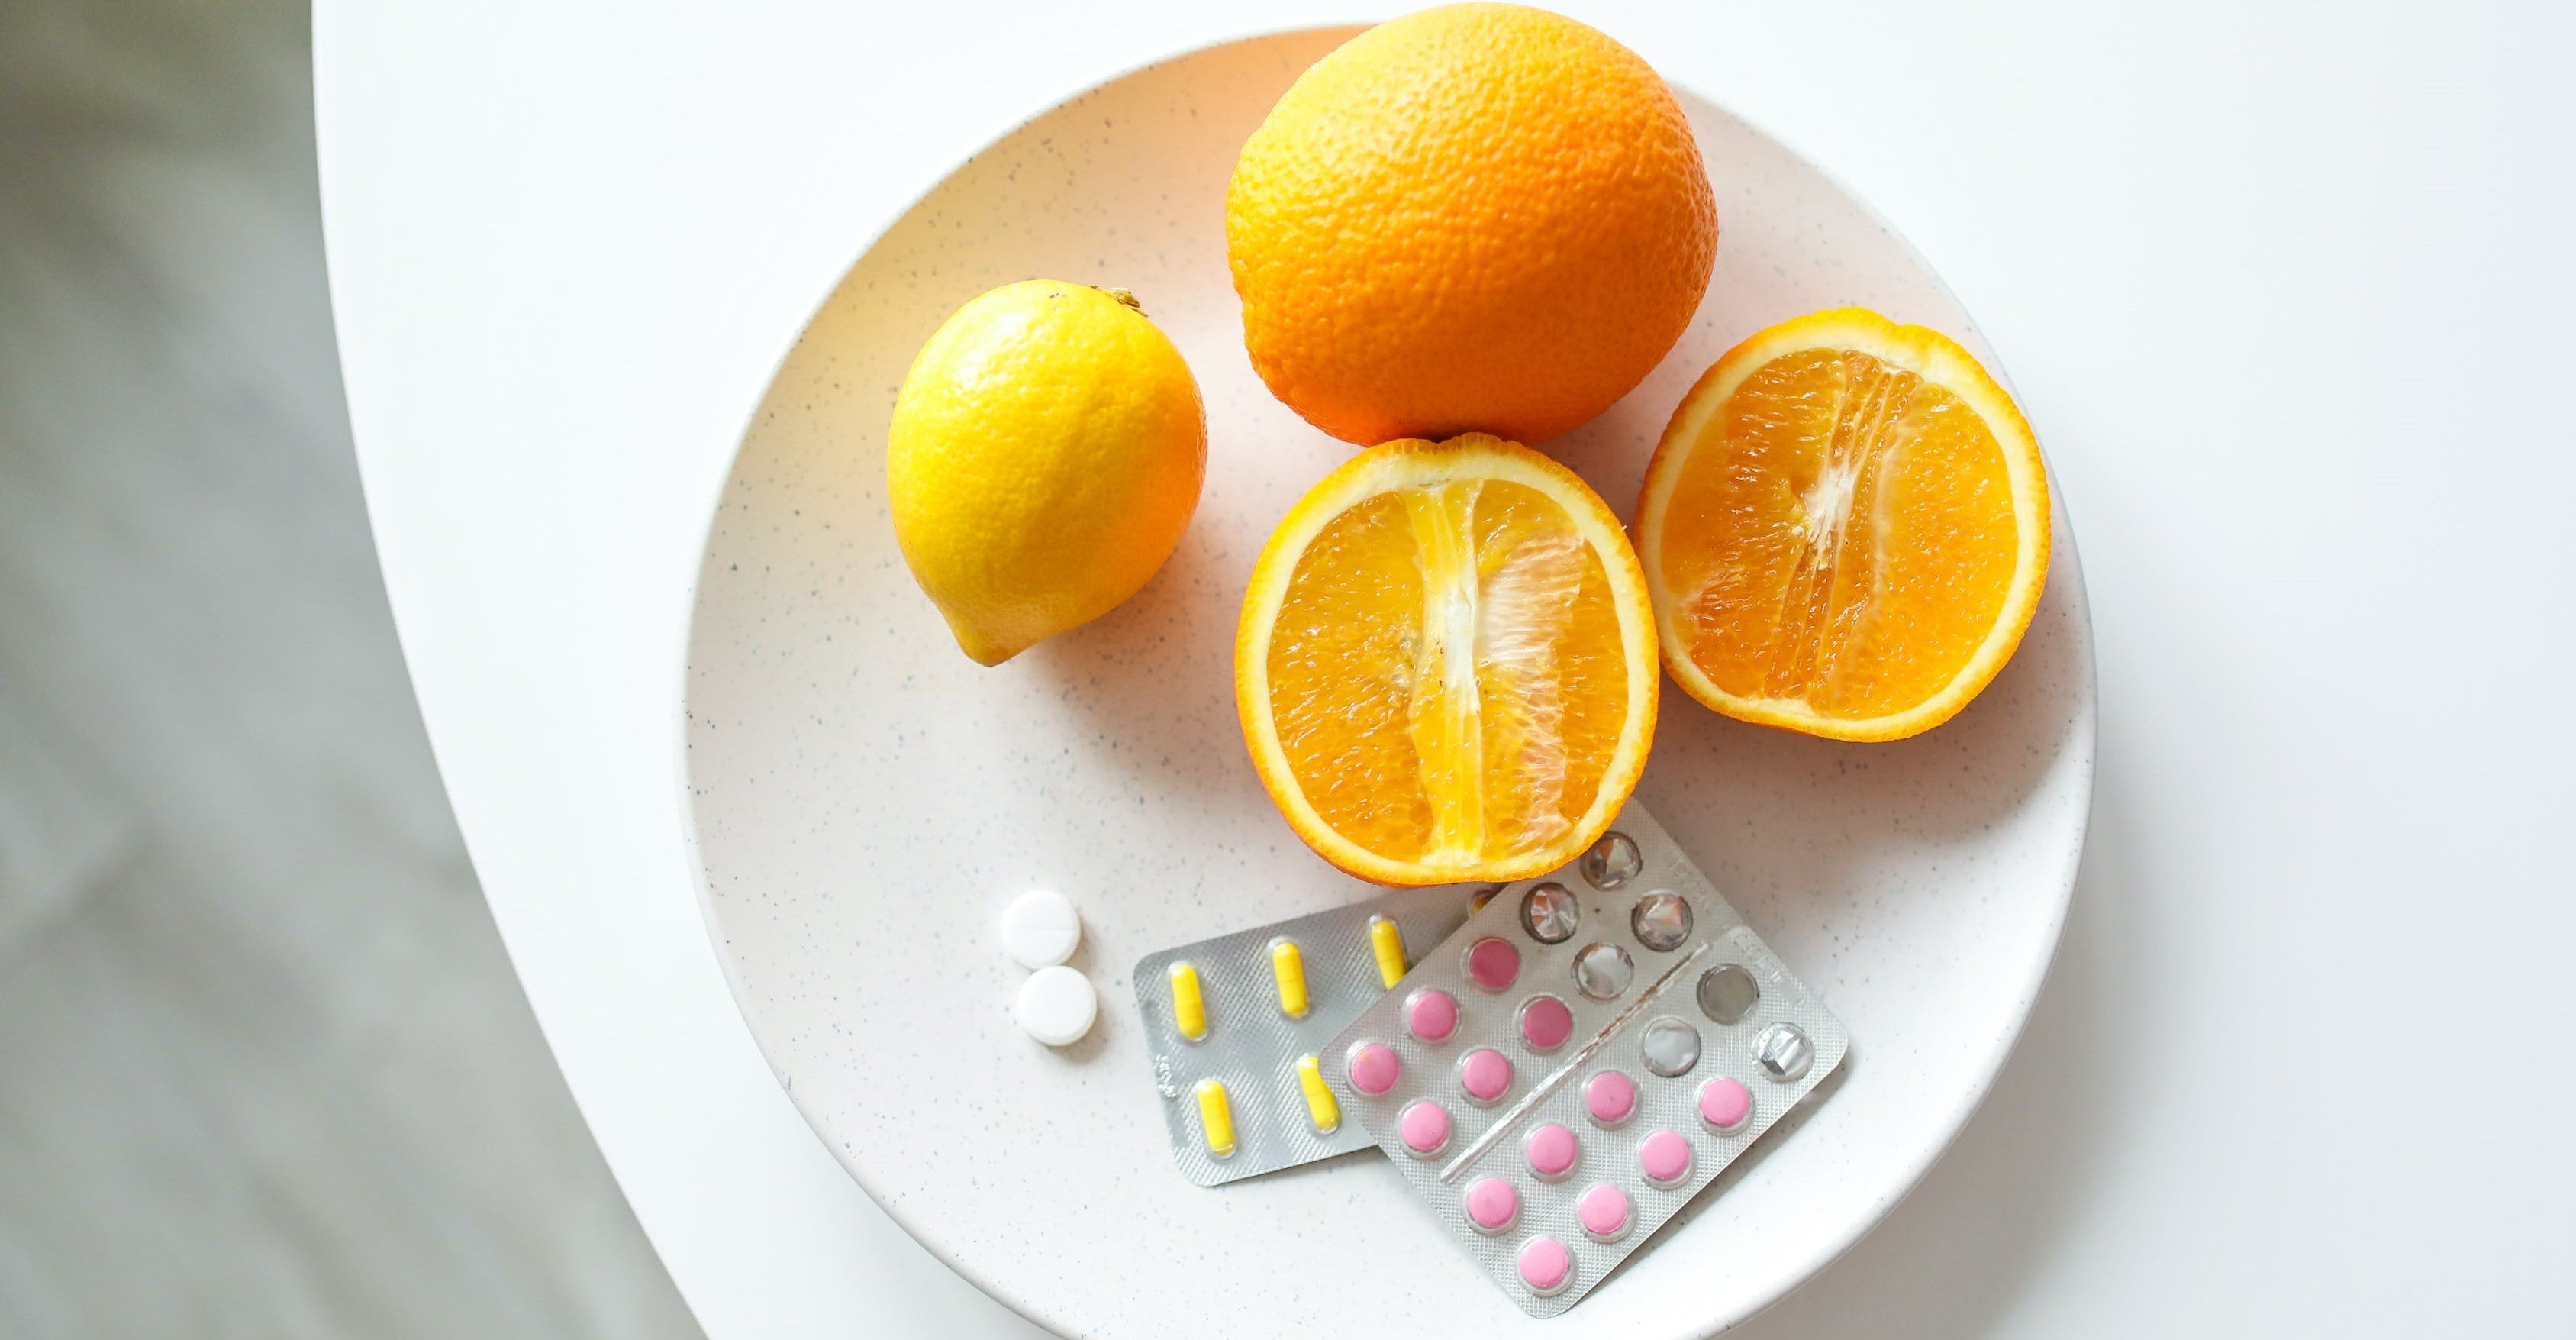 Oranges and medicine